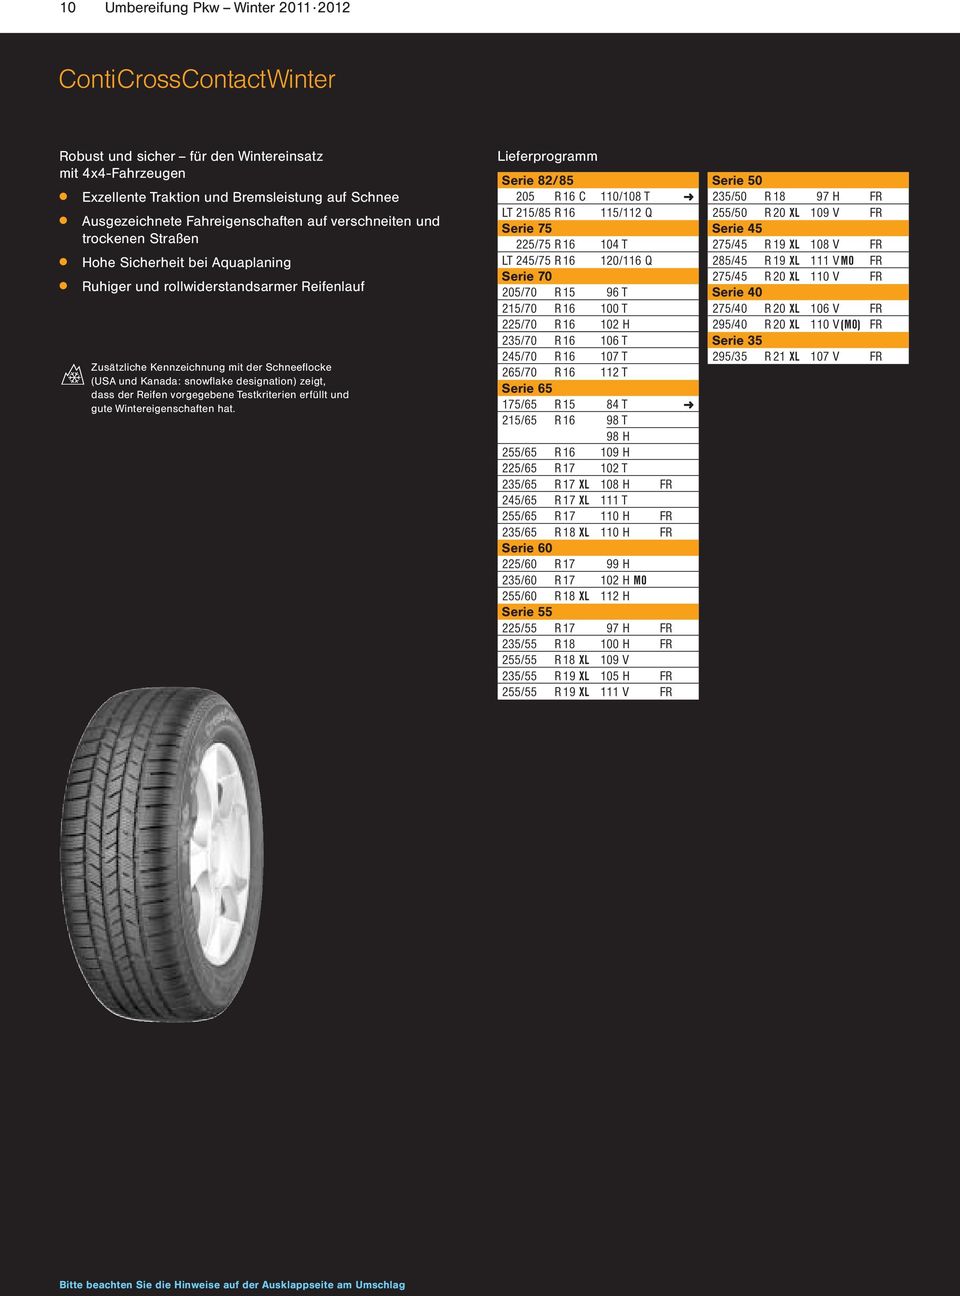 Kanada: snowflake designation) zeigt, dass der Reifen vorgegebene Testkriterien erfüllt und gute Wintereigenschaften hat.